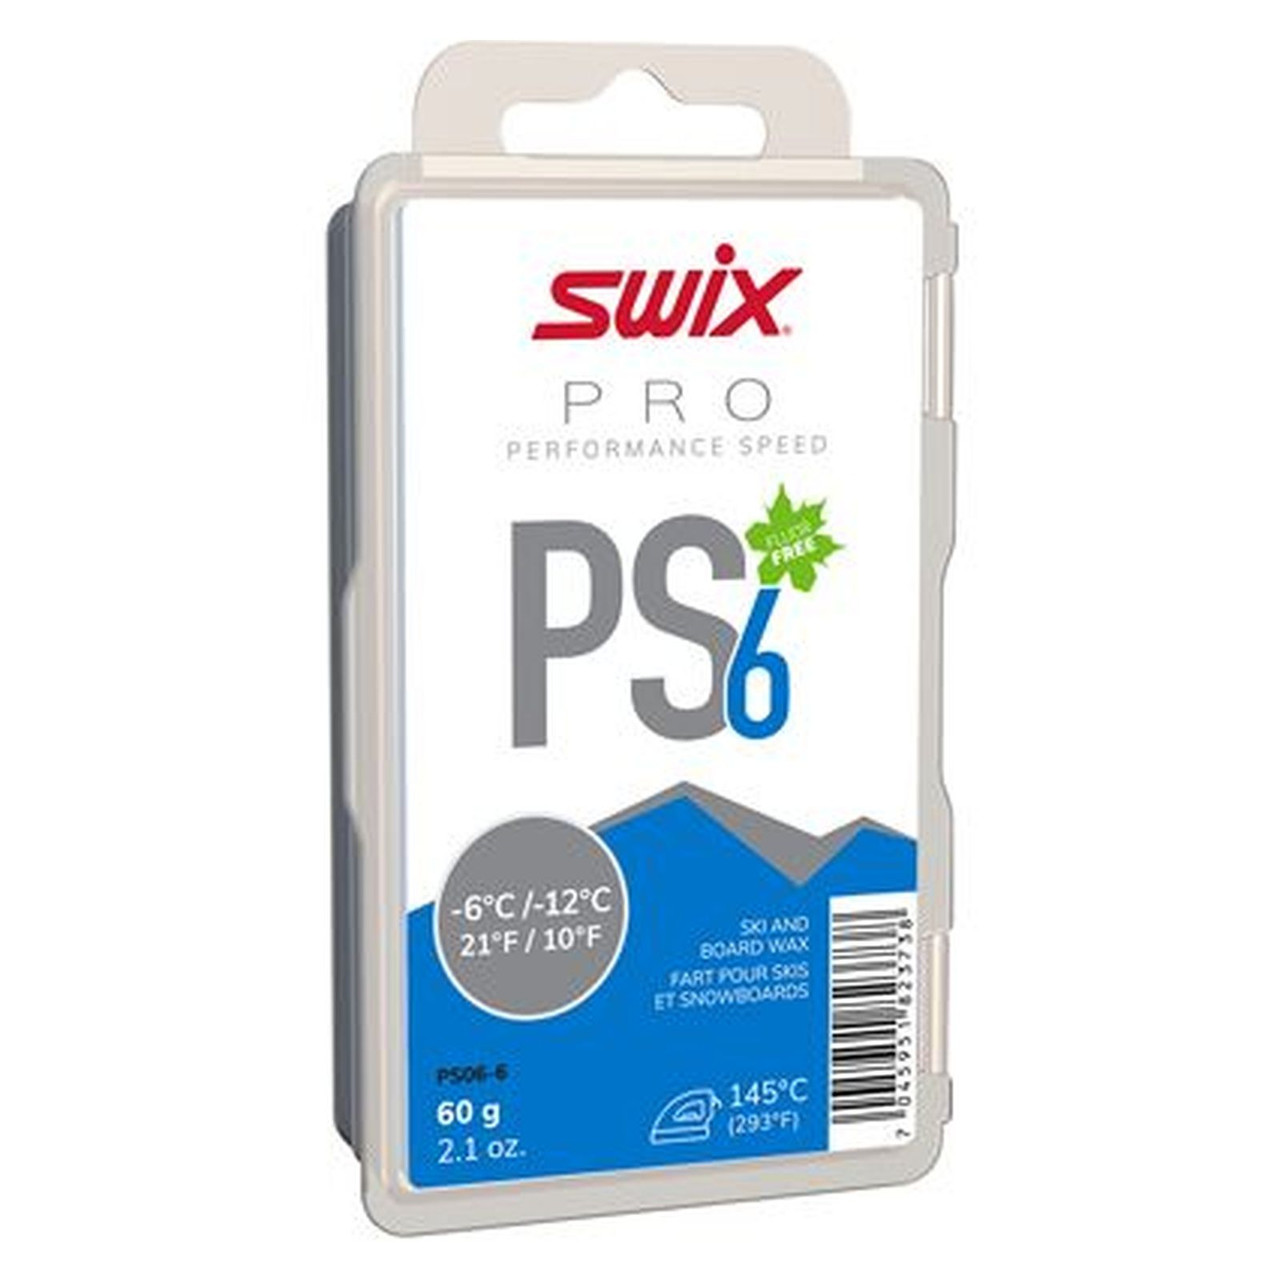 Swix PS6 Blue Ski & Board Wax